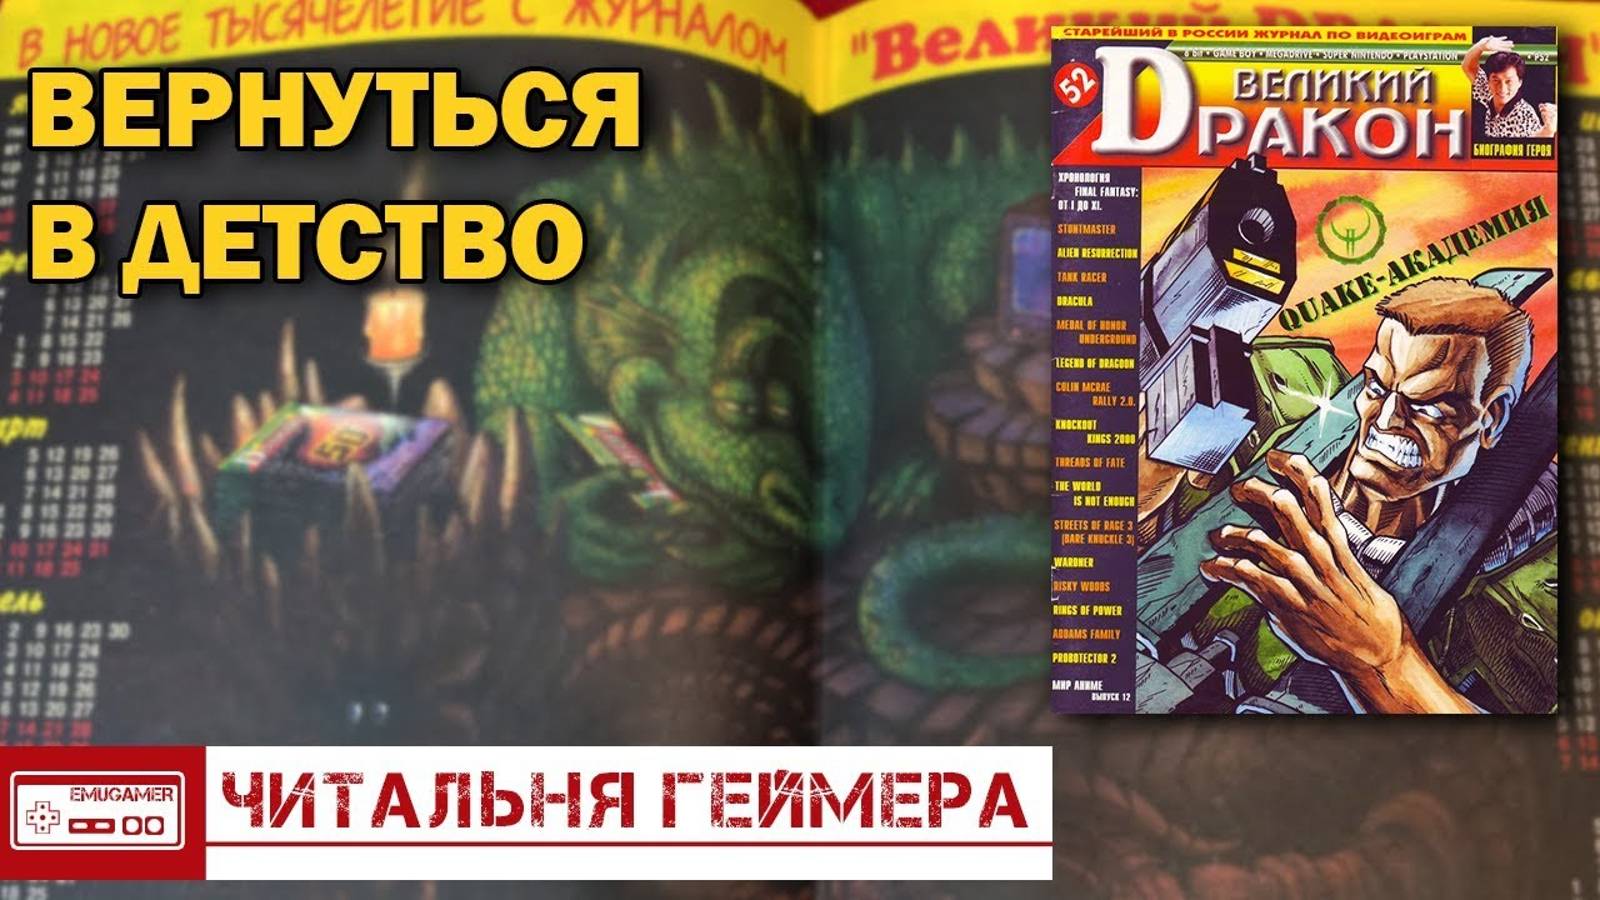 Великий Дракон #52 - Ностальгия по Пиратским переводам игр на PlayStation, Игры с Джеки Чаном